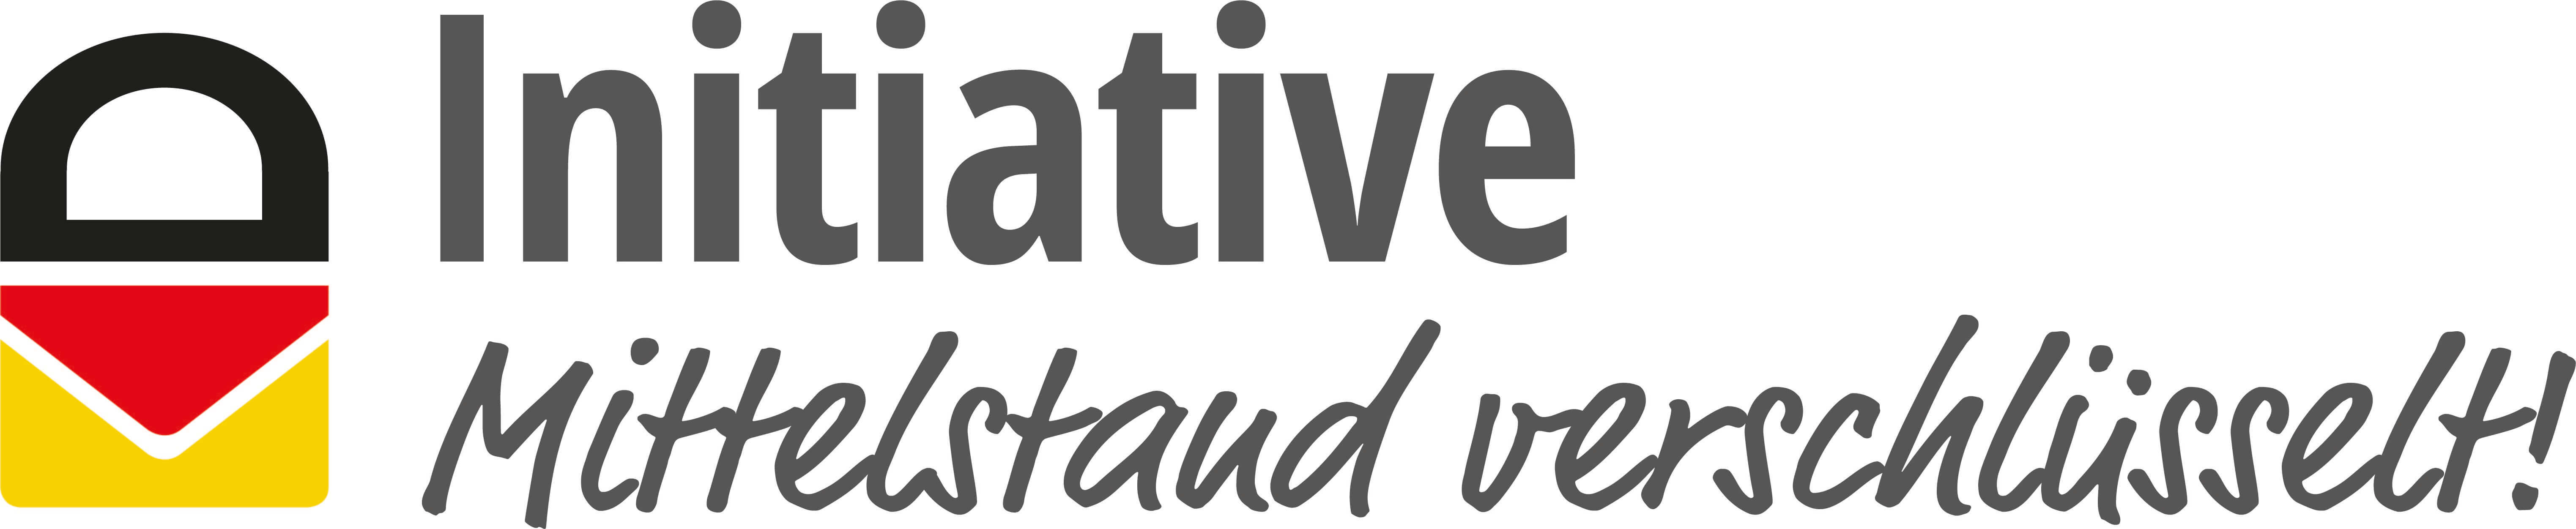 E-Mail-Verschlüsselung Logo Initiative Mittelstand verschlüsselt!